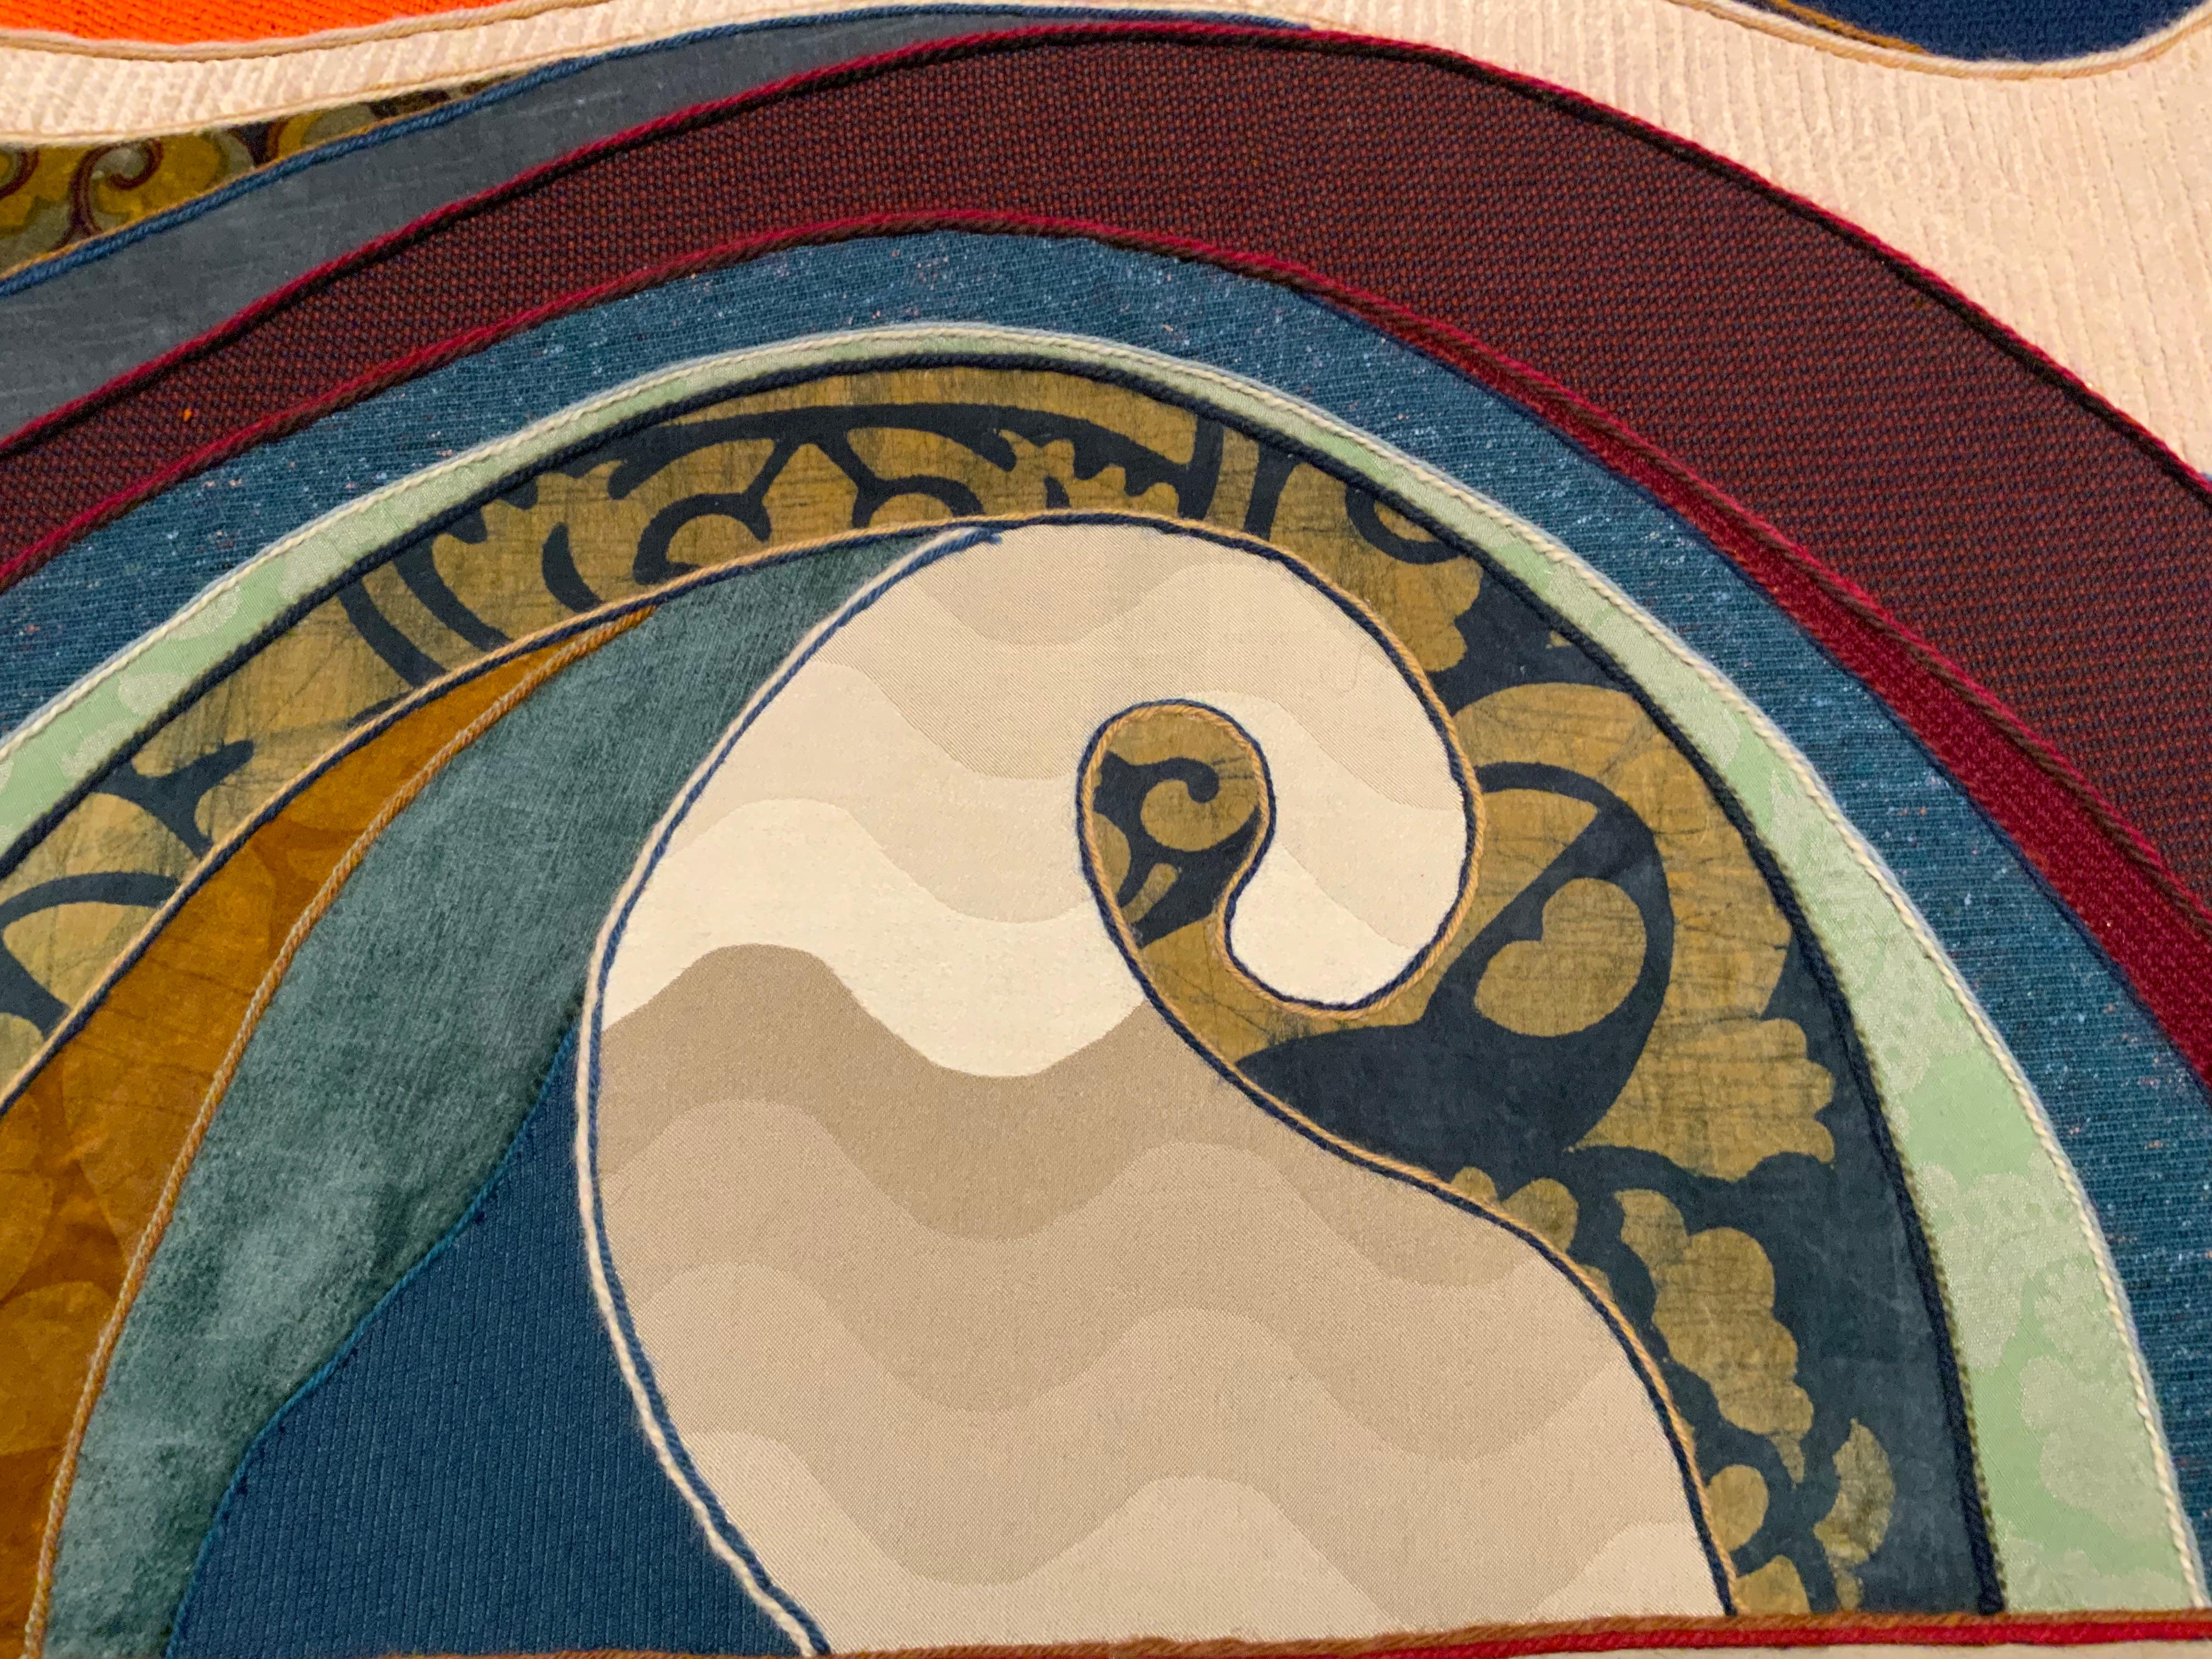 Von Helen Webber (Amerikanerin, 1928-2019) entworfener und handgefertigter Wandteppich aus einer Stoffcollage. Der Künstler verwendet eine Collagetechnik, bei der er eine Reihe von Designer-Polsterstoffen wie Samt, Brokat, Kammgarn, Jacquard,